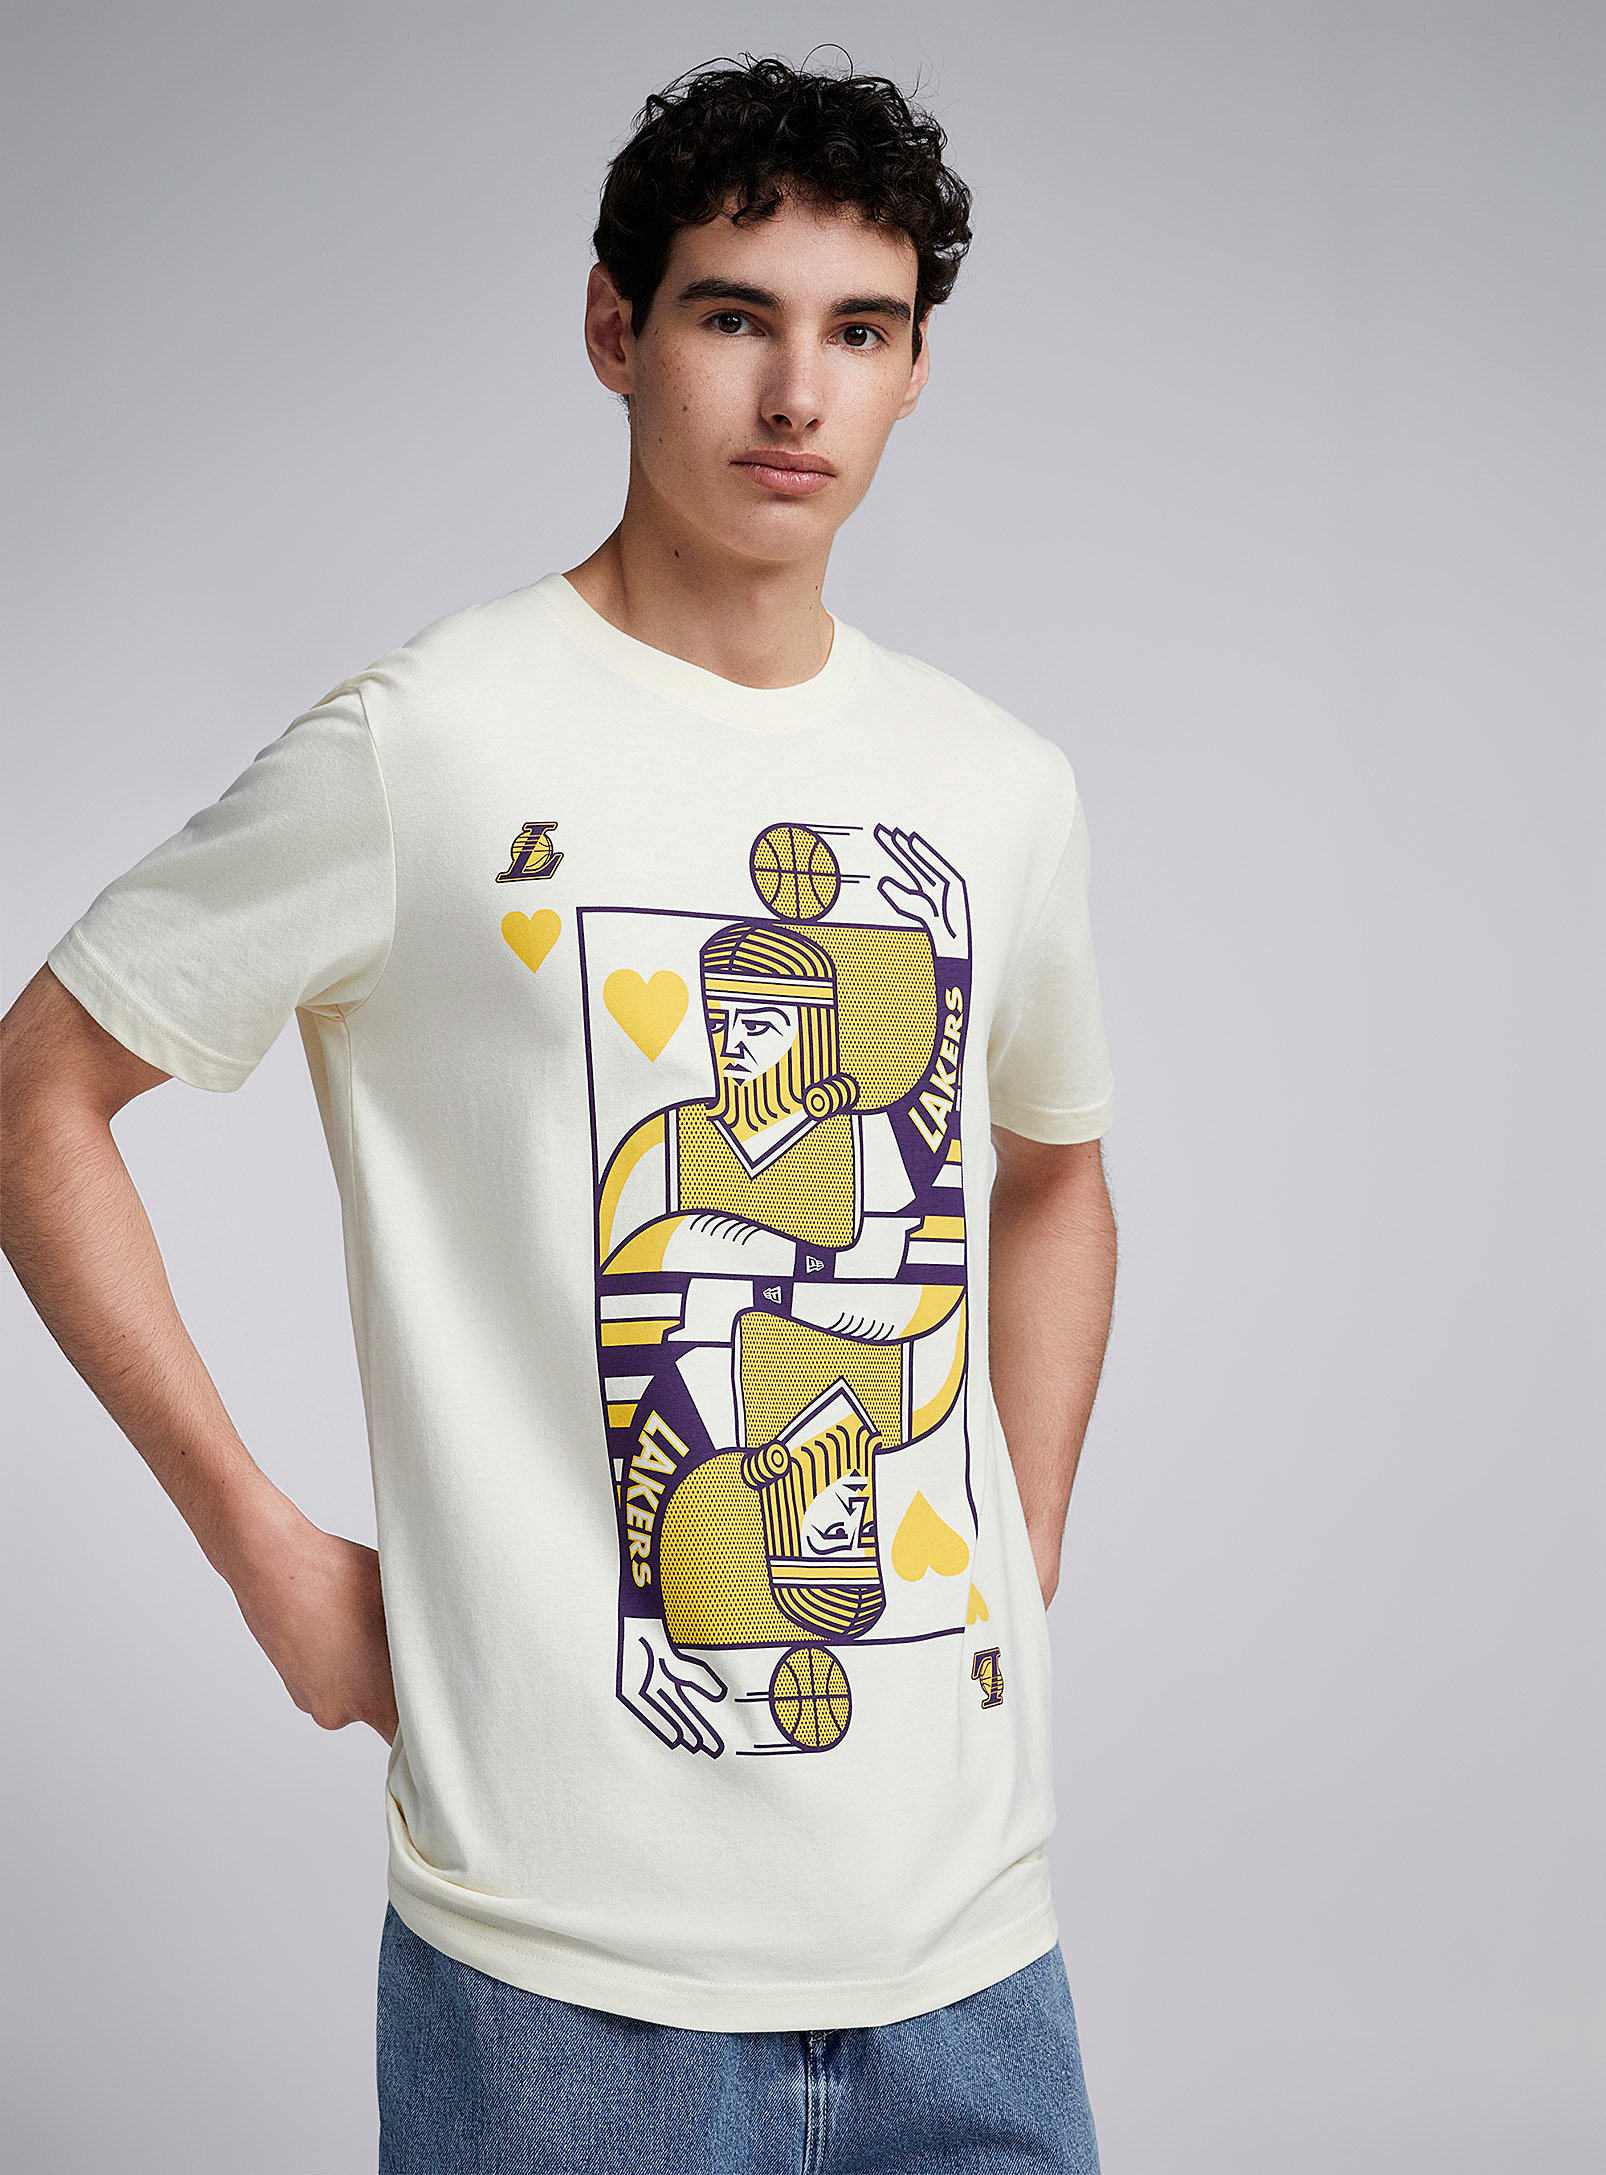 New Era - Le t-shirt carte à jouer Lakers